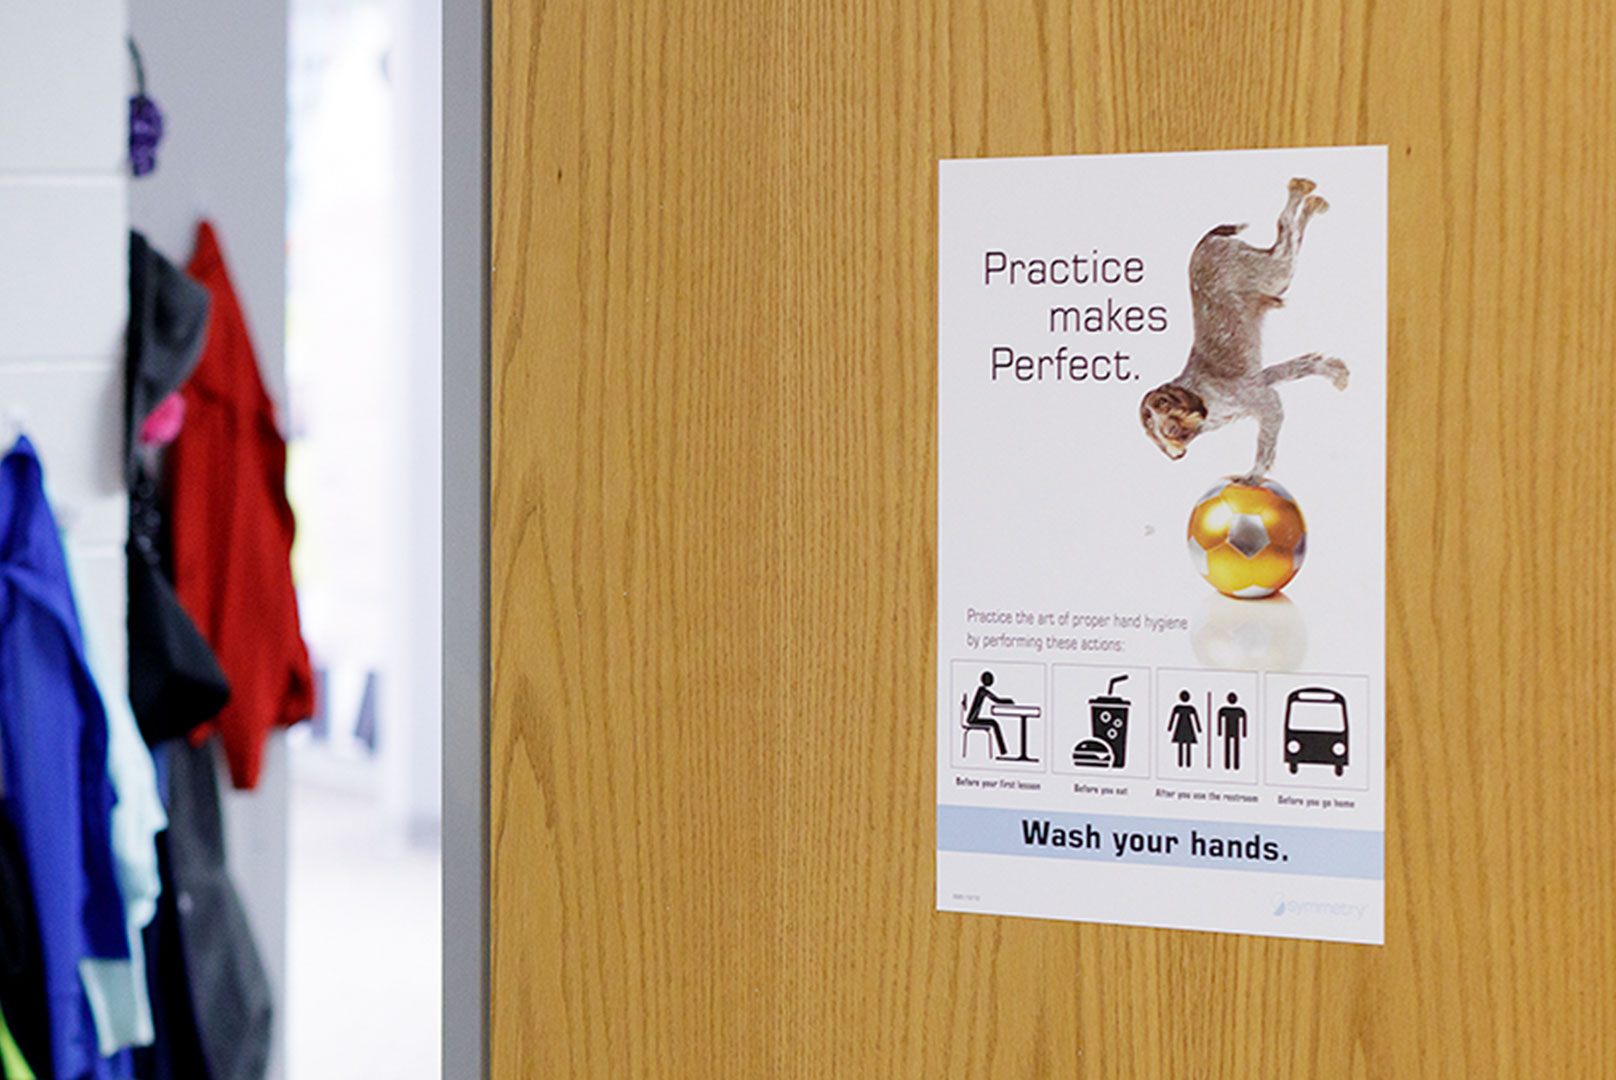 Practice makes perfect poster on Door in school